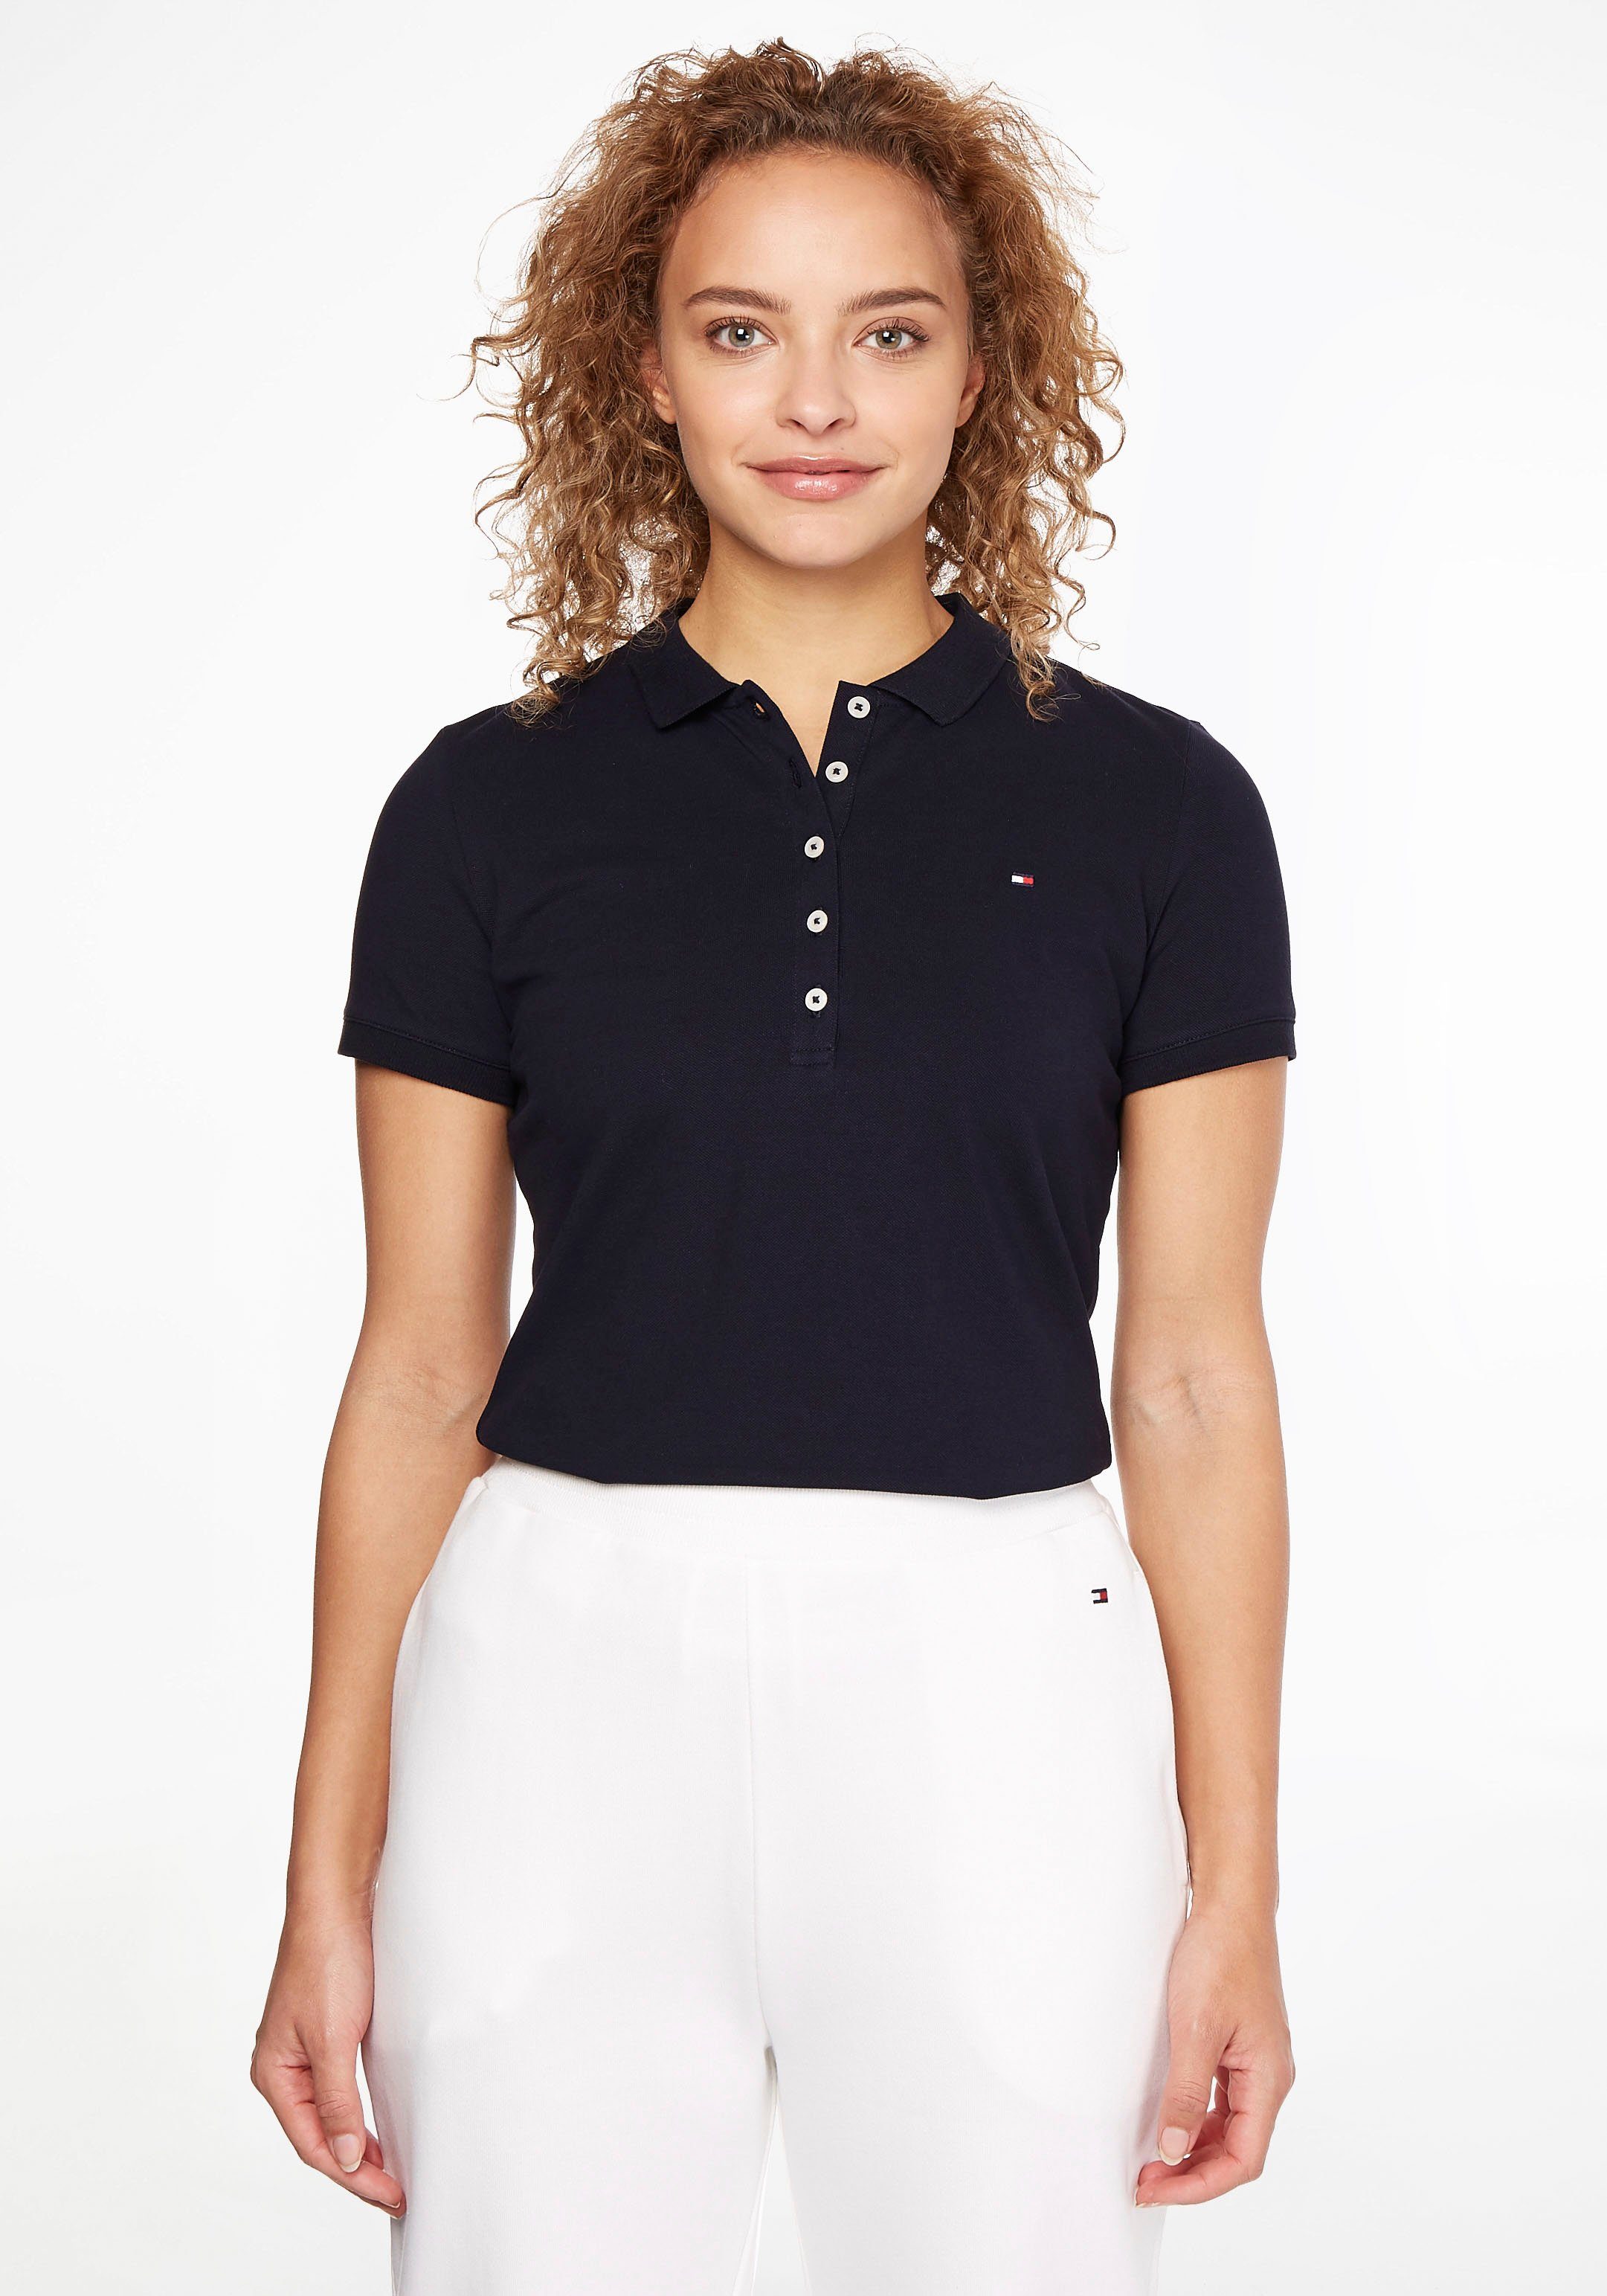 Tommy Hilfiger Damen Poloshirts online kaufen » Polohemden | OTTO